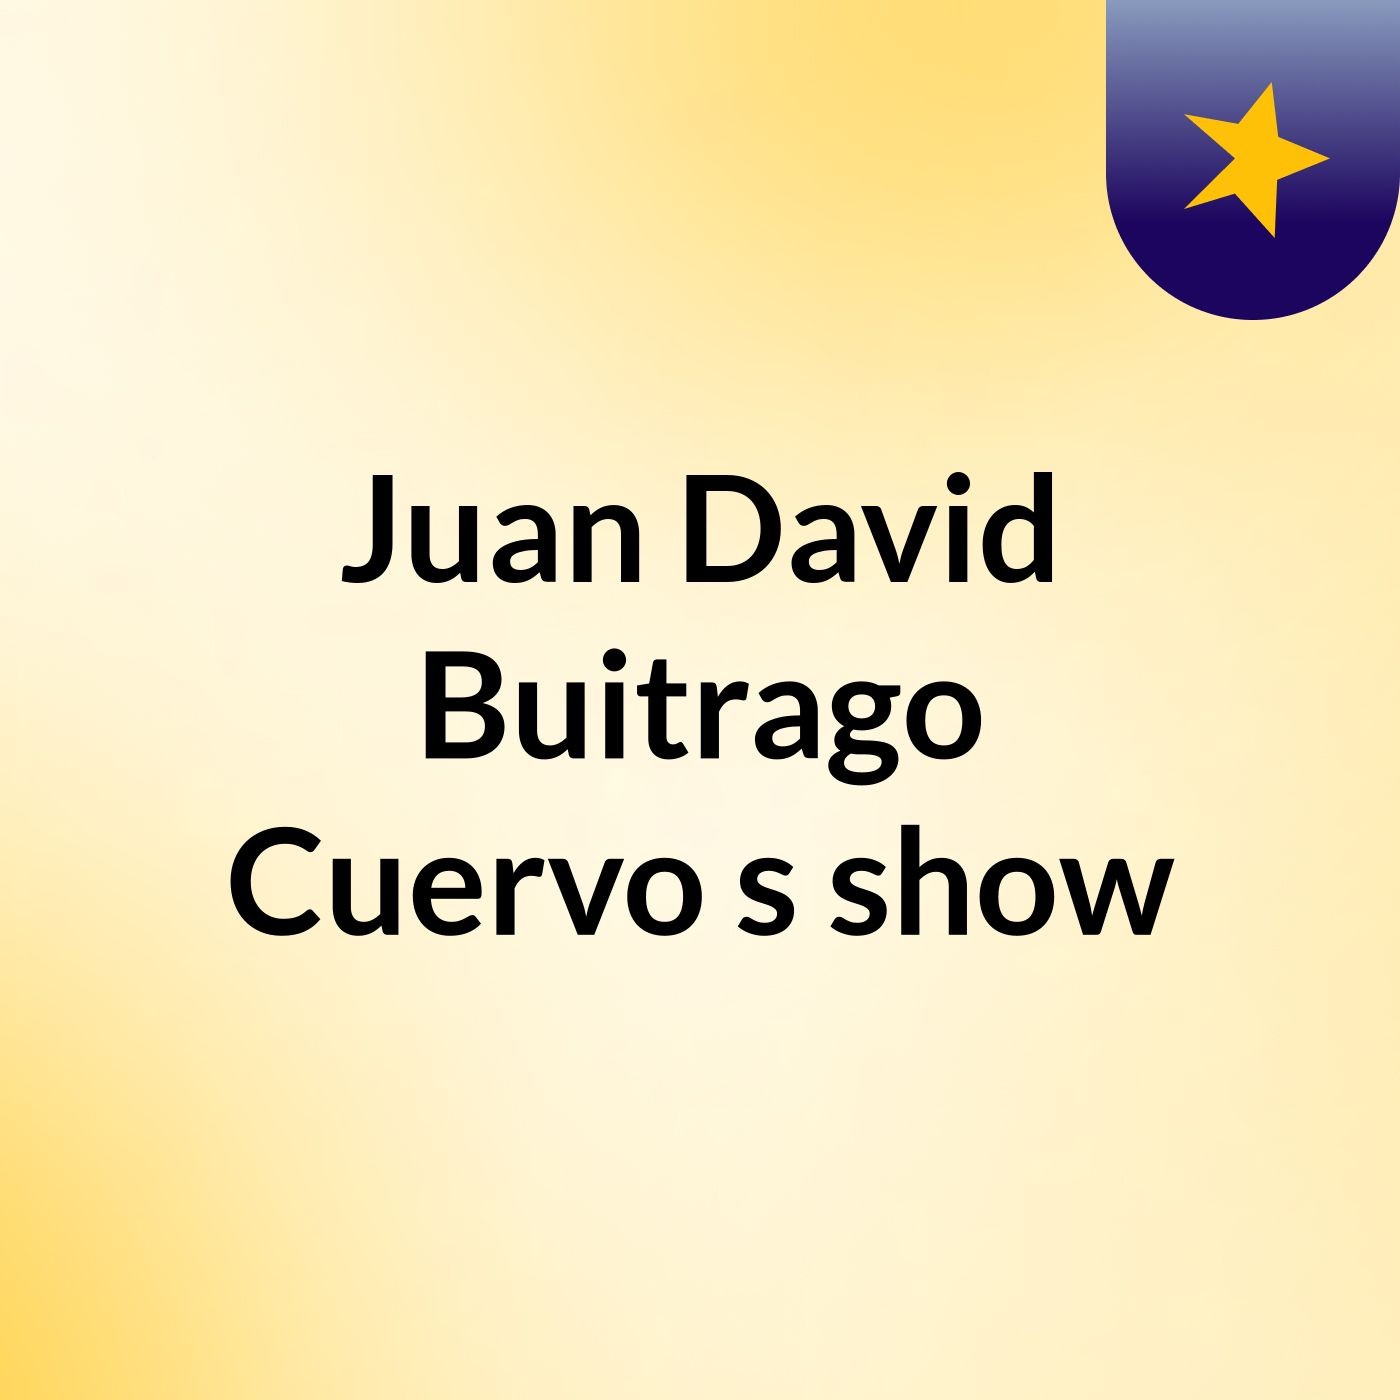 Juan David Buitrago Cuervo's show